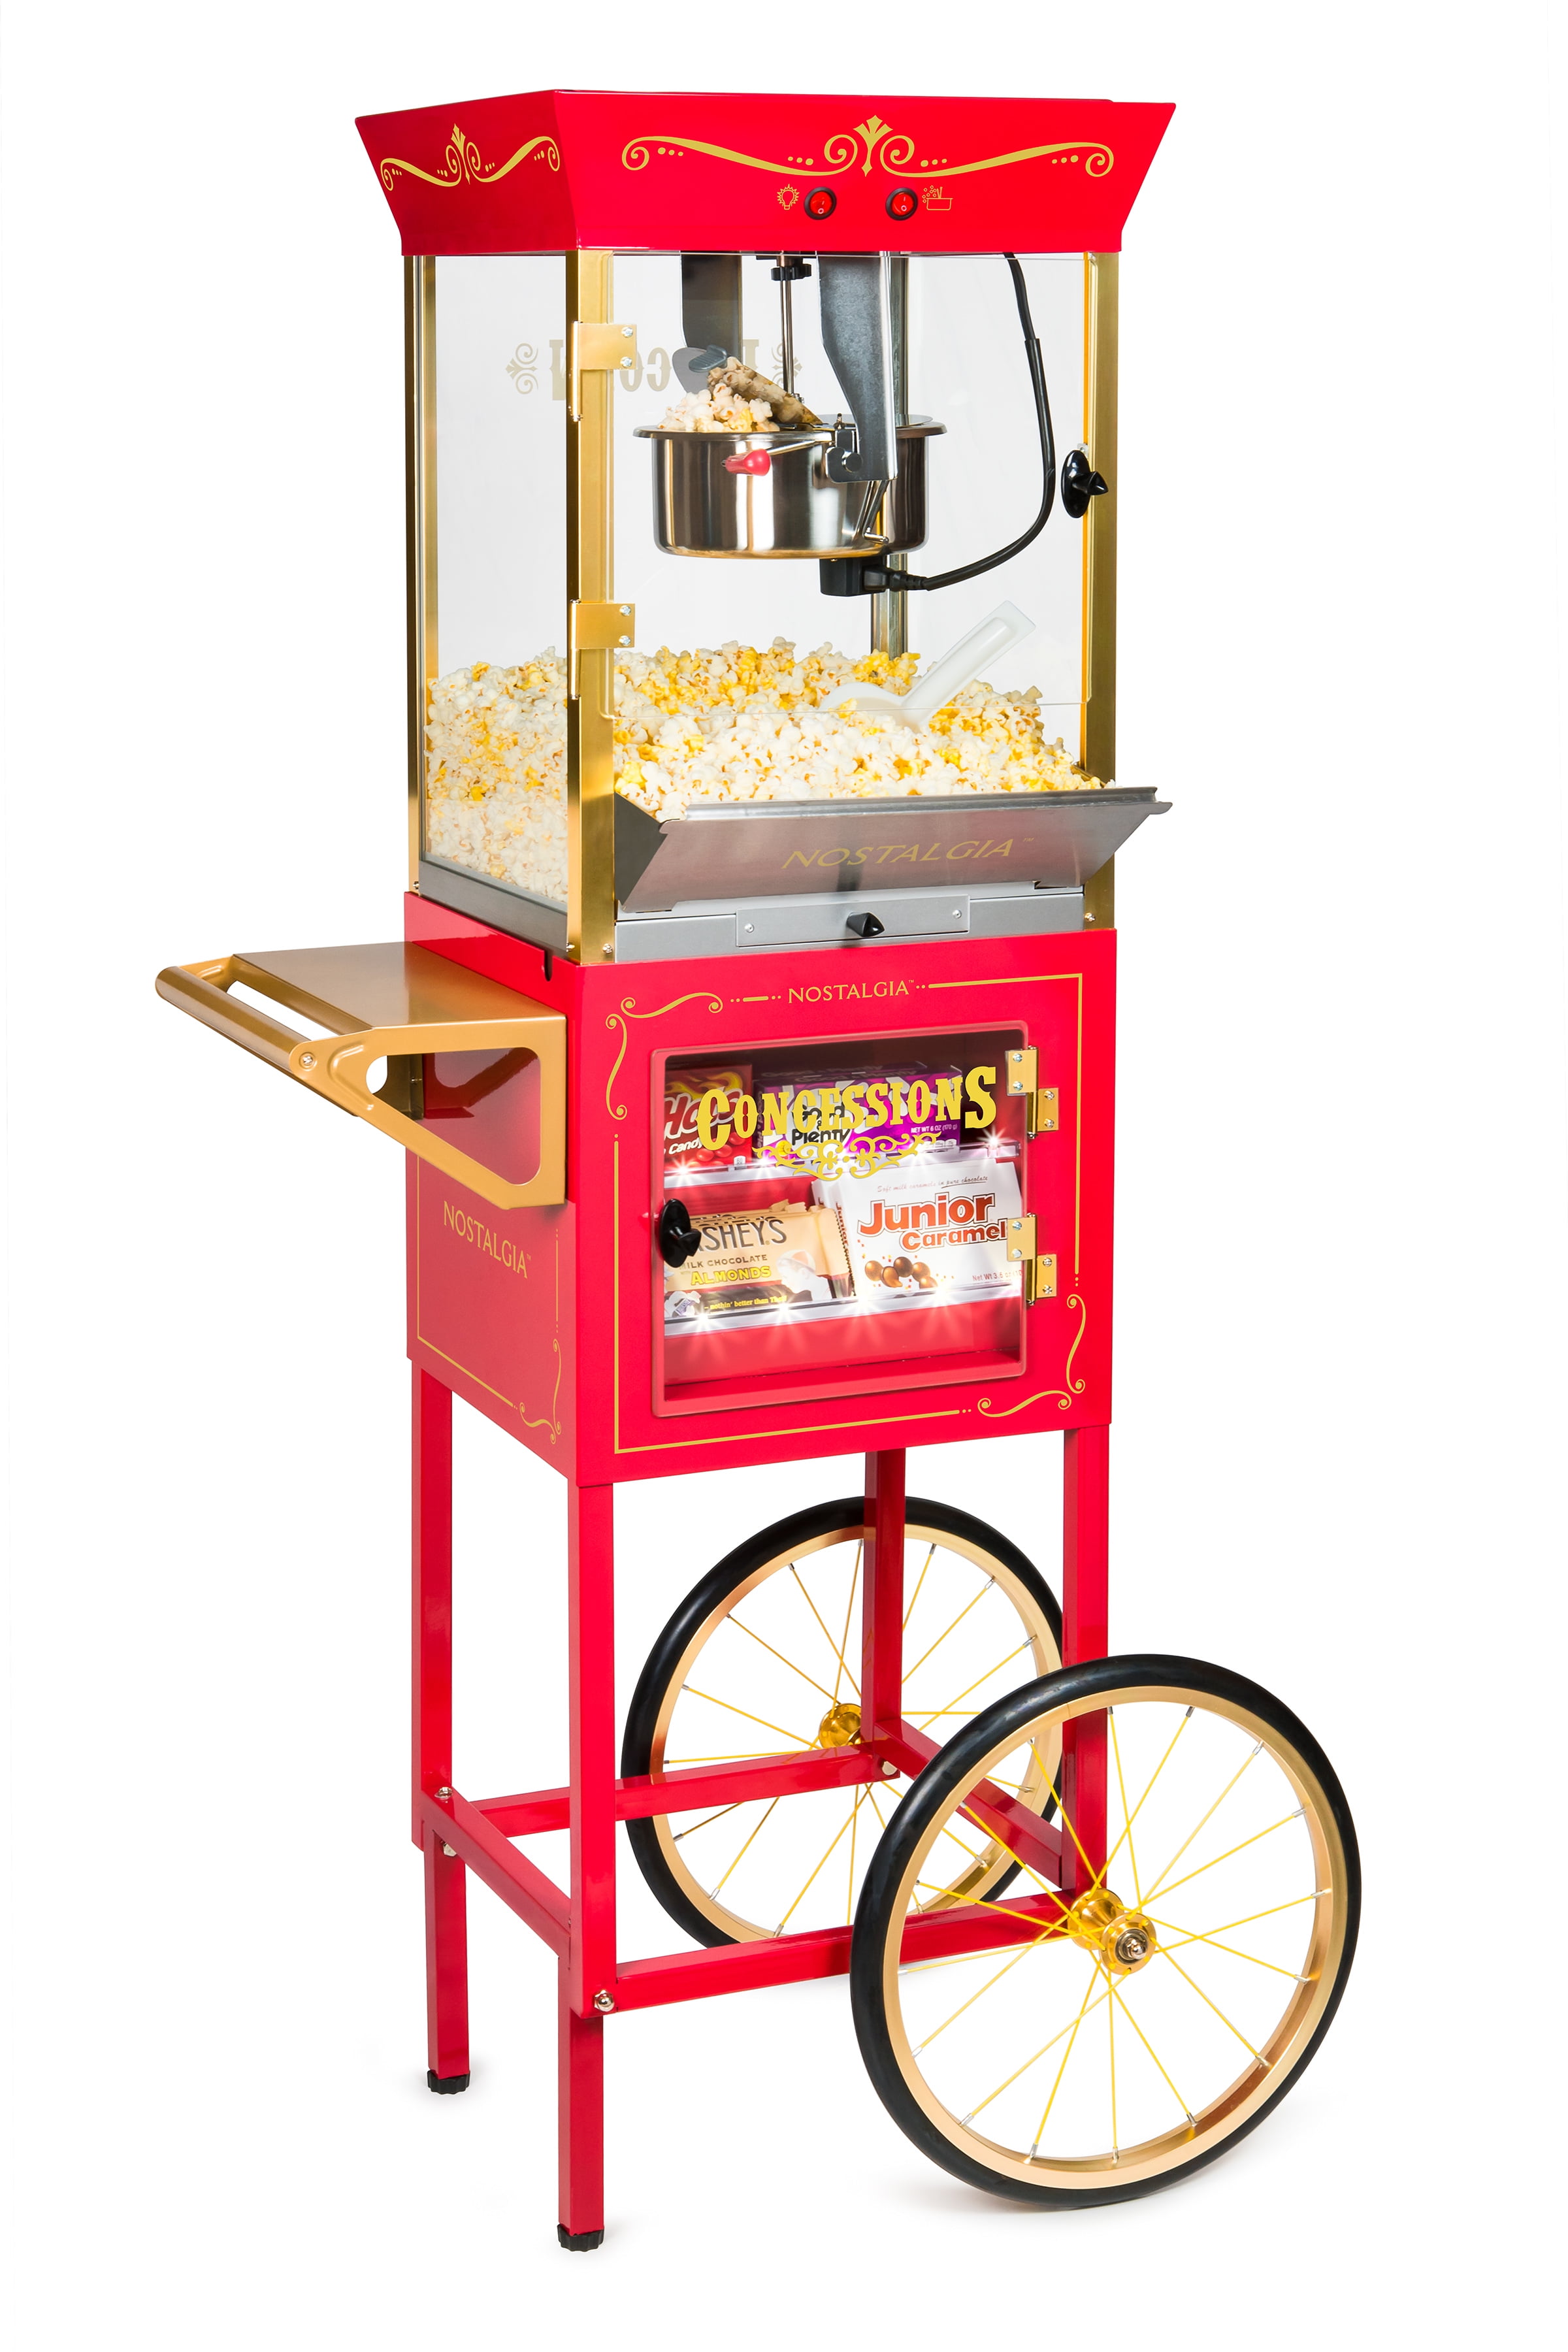 Nostalgia Popcorn Machine Stand